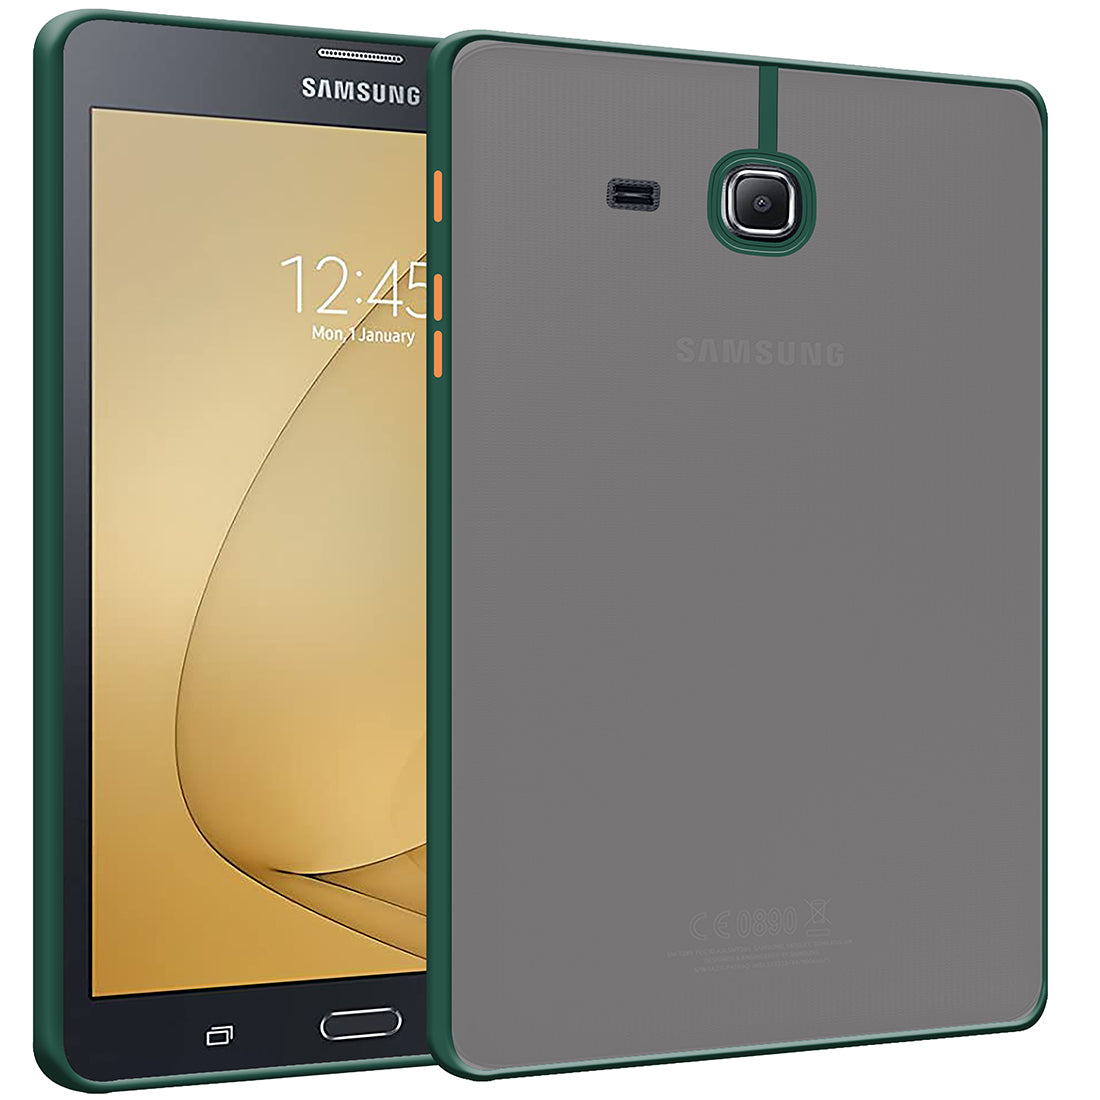 Samsung Galaxy Tab T285 (7 inch)